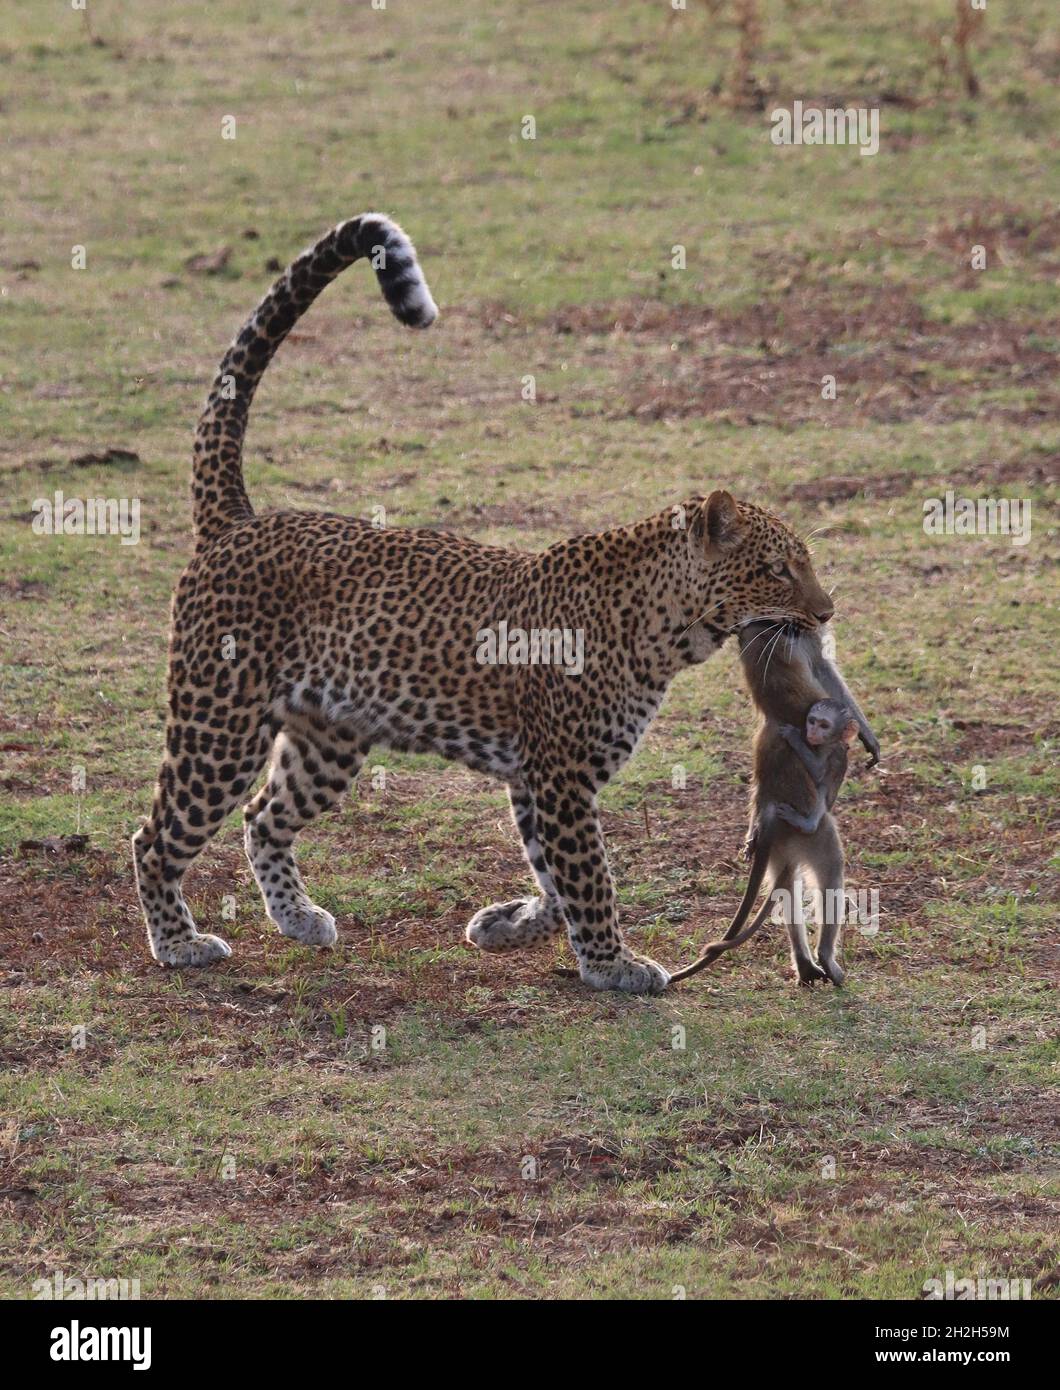 Ce moment marquant a été capturé dans le parc national de Luangwa-Sud, en Zambie.PARC NATIONAL DE LUANGWA SUD, ZAMBIE : LE MOMENT DE RUPTURE d'un bébé Banque D'Images